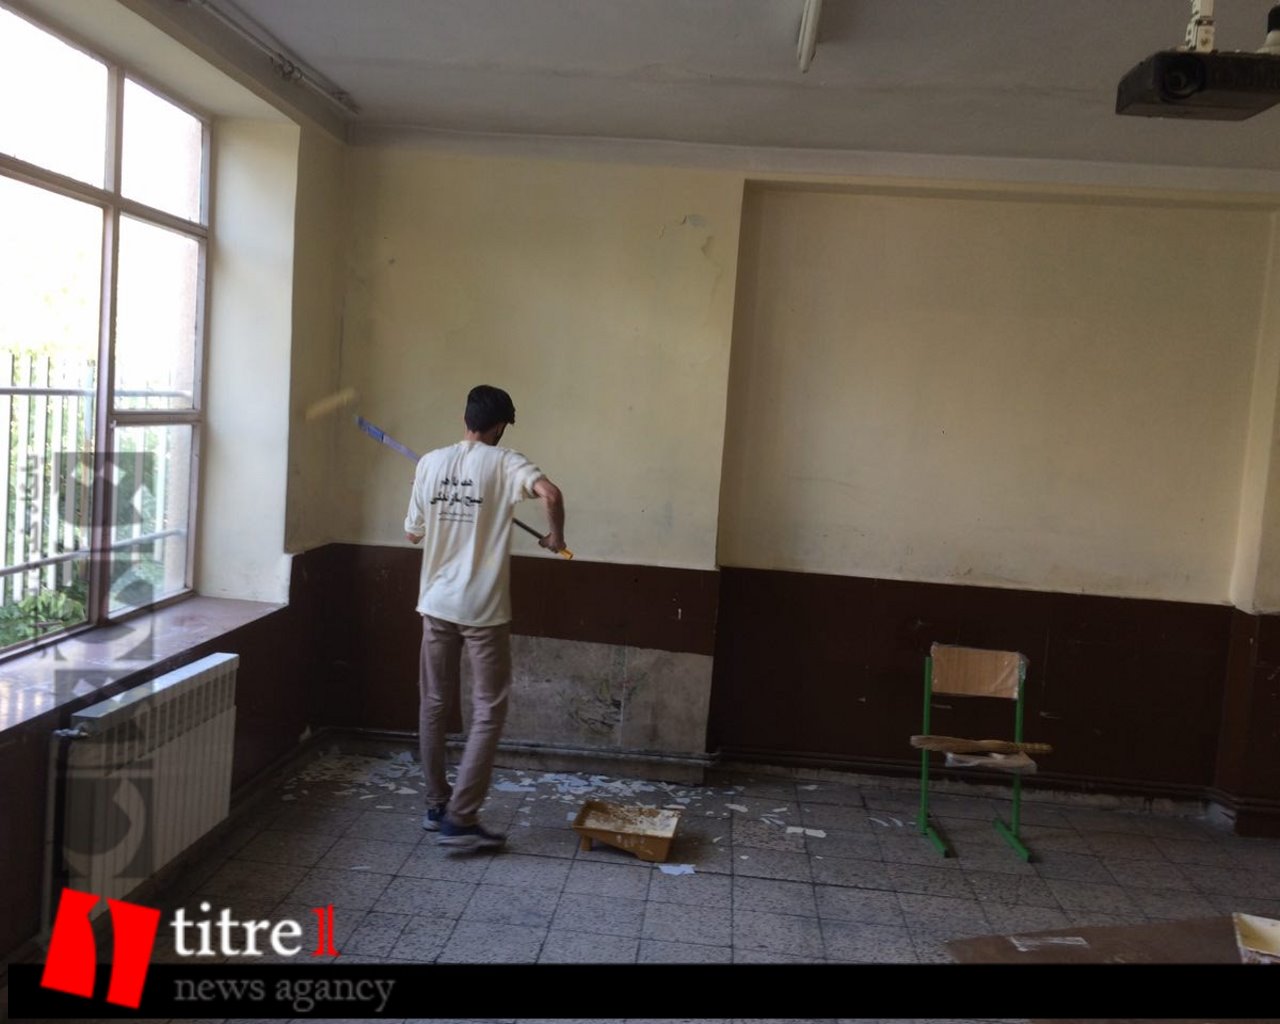 فضا سازی و رنگ آمیزی 6 مدرسه توسط جهادگران در کرج/ 5 مدرسه برای بازسازی و تجهیز در مناطق محروم شناسایی شد